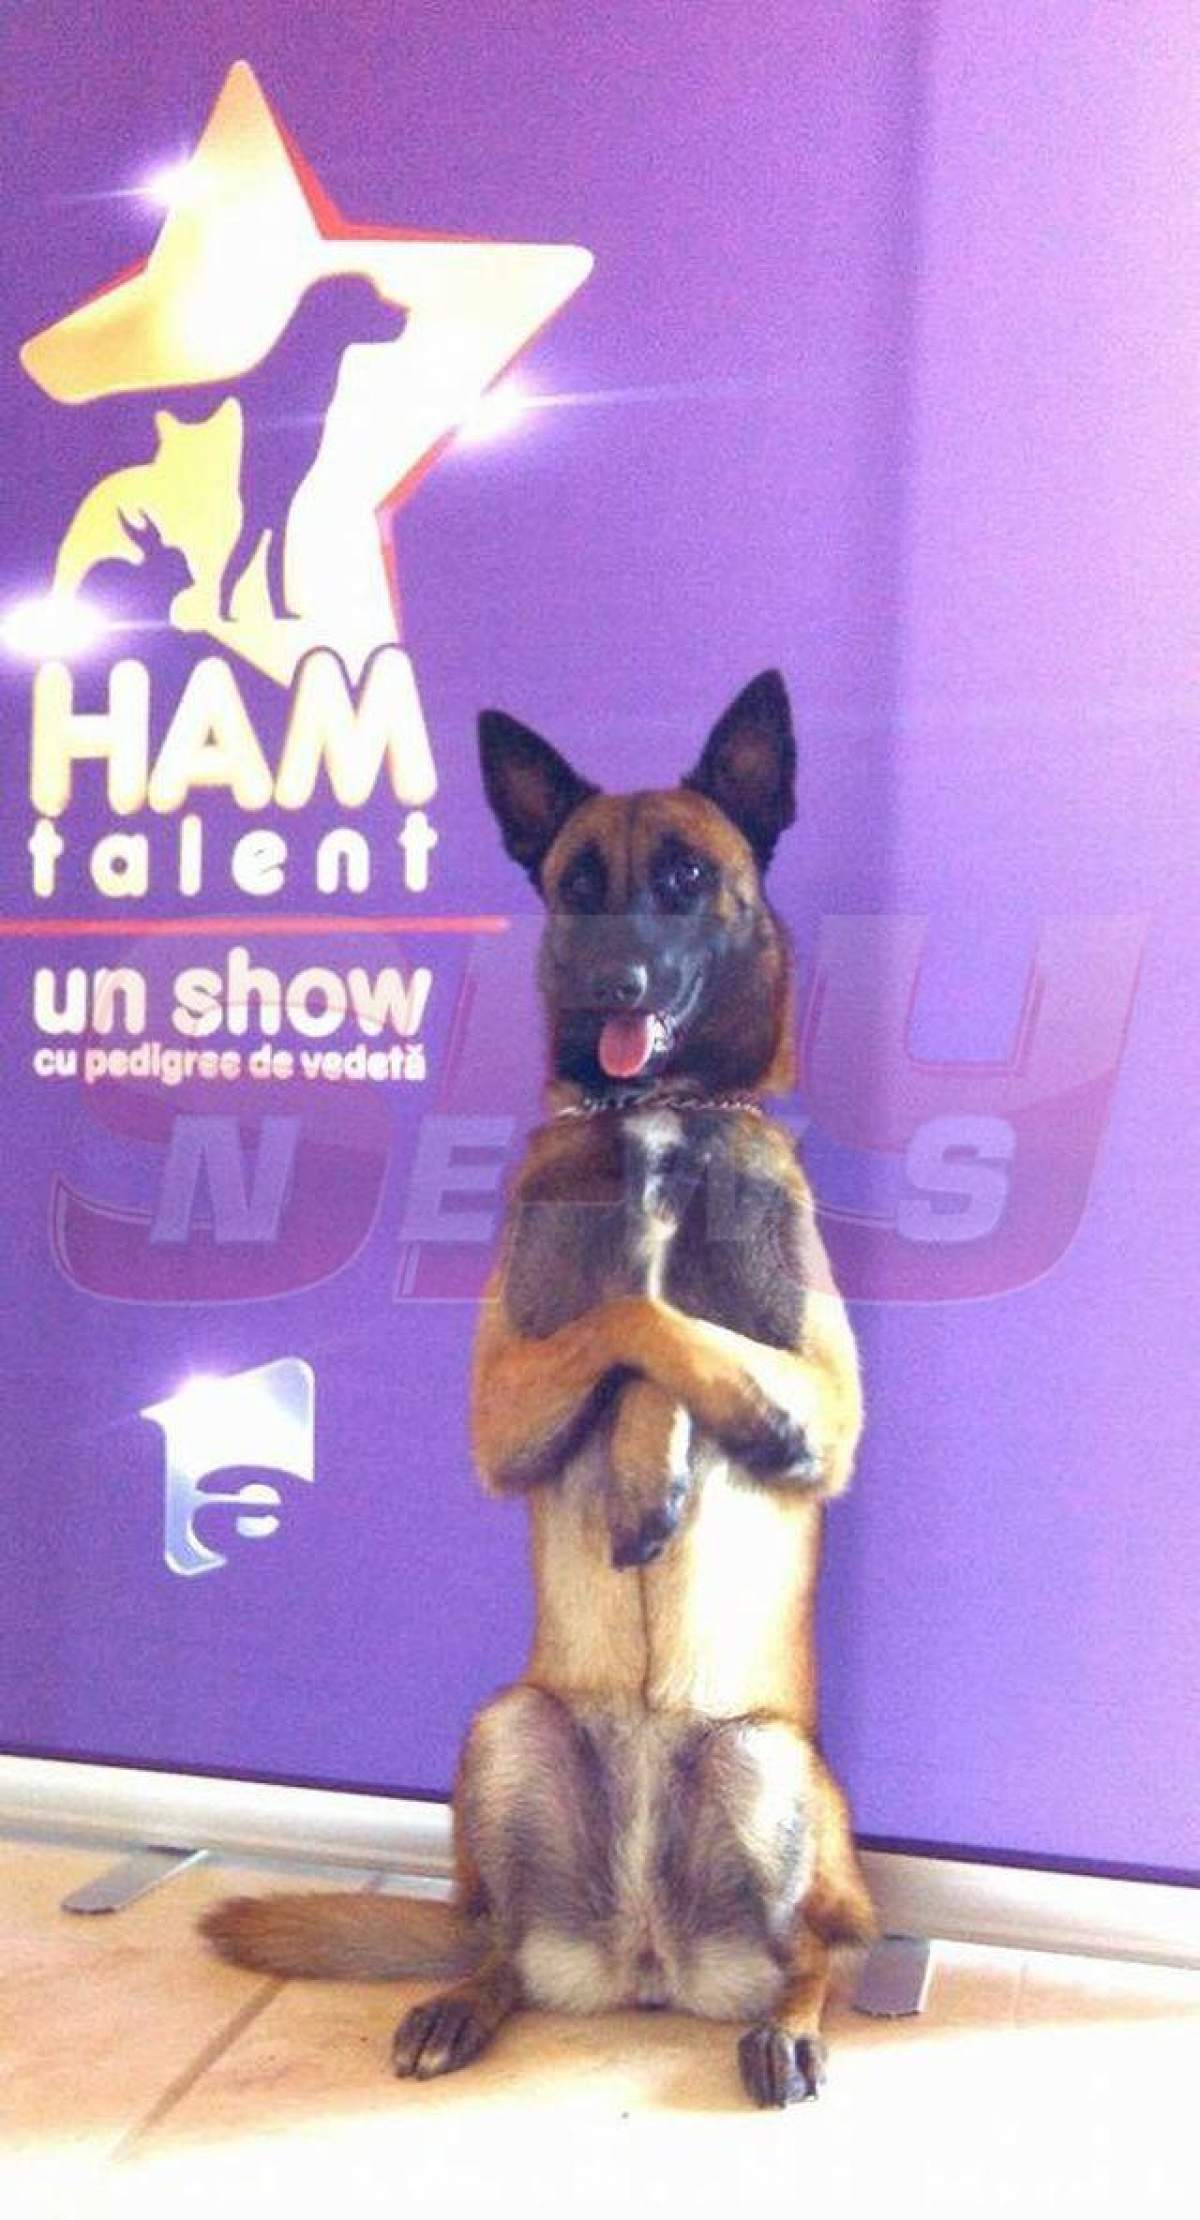 FOTO / Preselecţiile „Ham talent” au început! Un câine i-a uimit pe toţi cu "prestaţia" sa